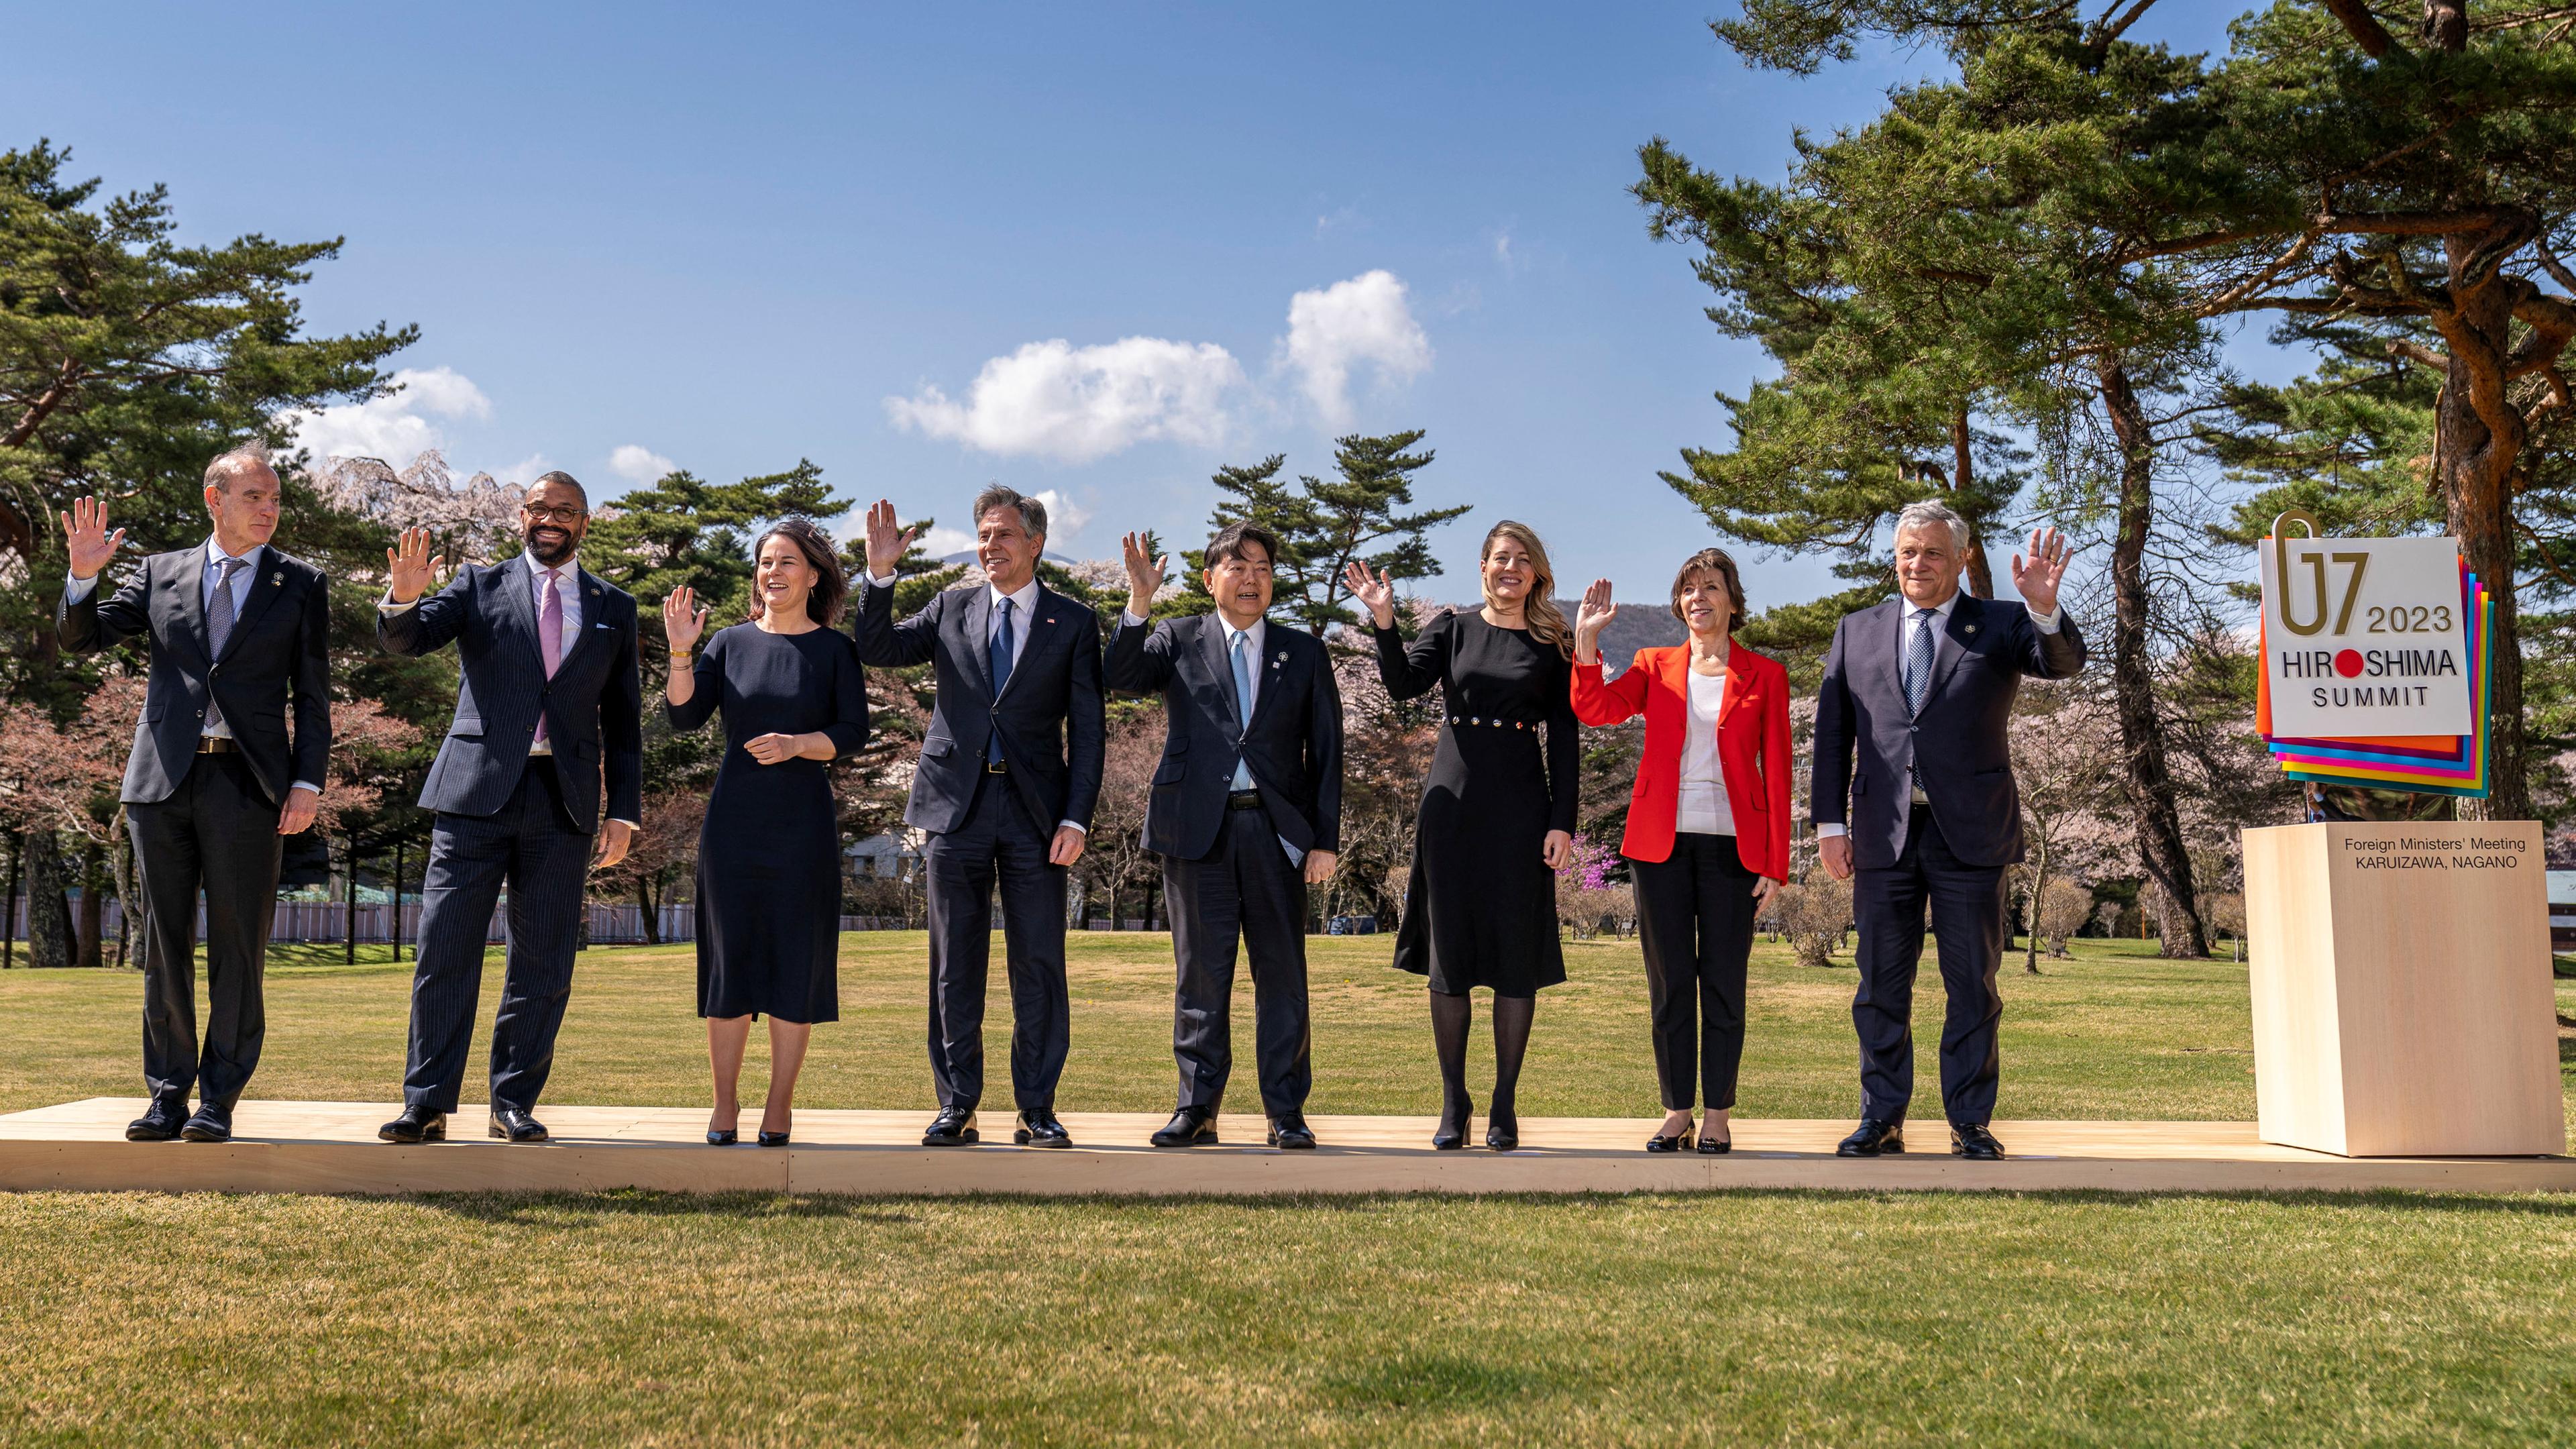 Die Außenministerinnen und Außenminister der G7 staaten stehen nebeninander auf einer Wiese und winken in die Kamera.